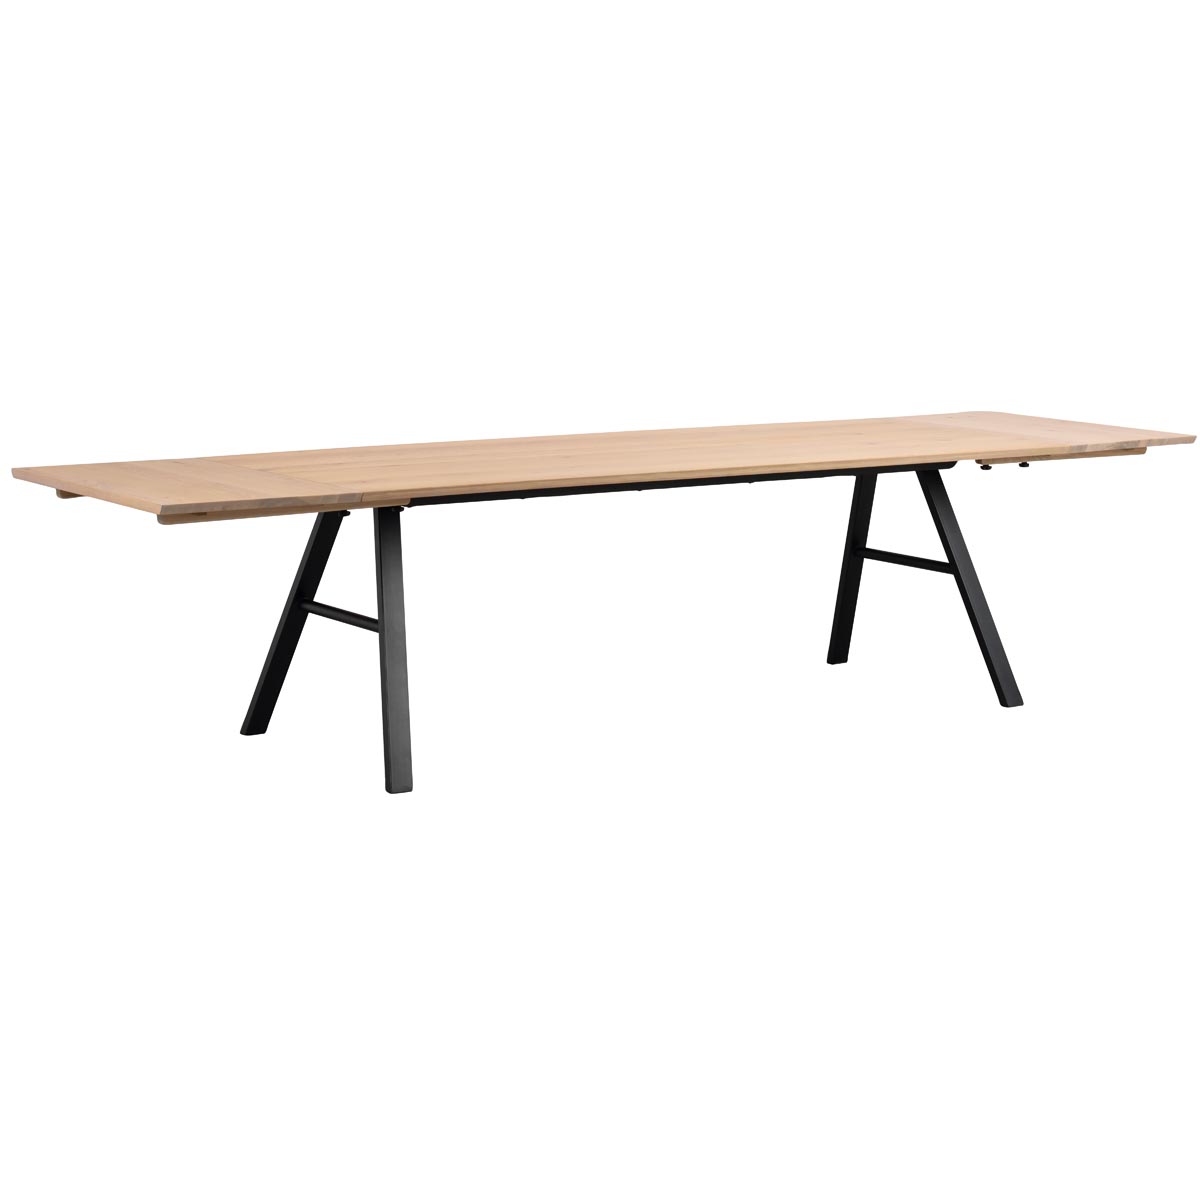 Brigham matbord 119400 + tilläggsskivor 119404, vitpigm. vildek ek_svart R